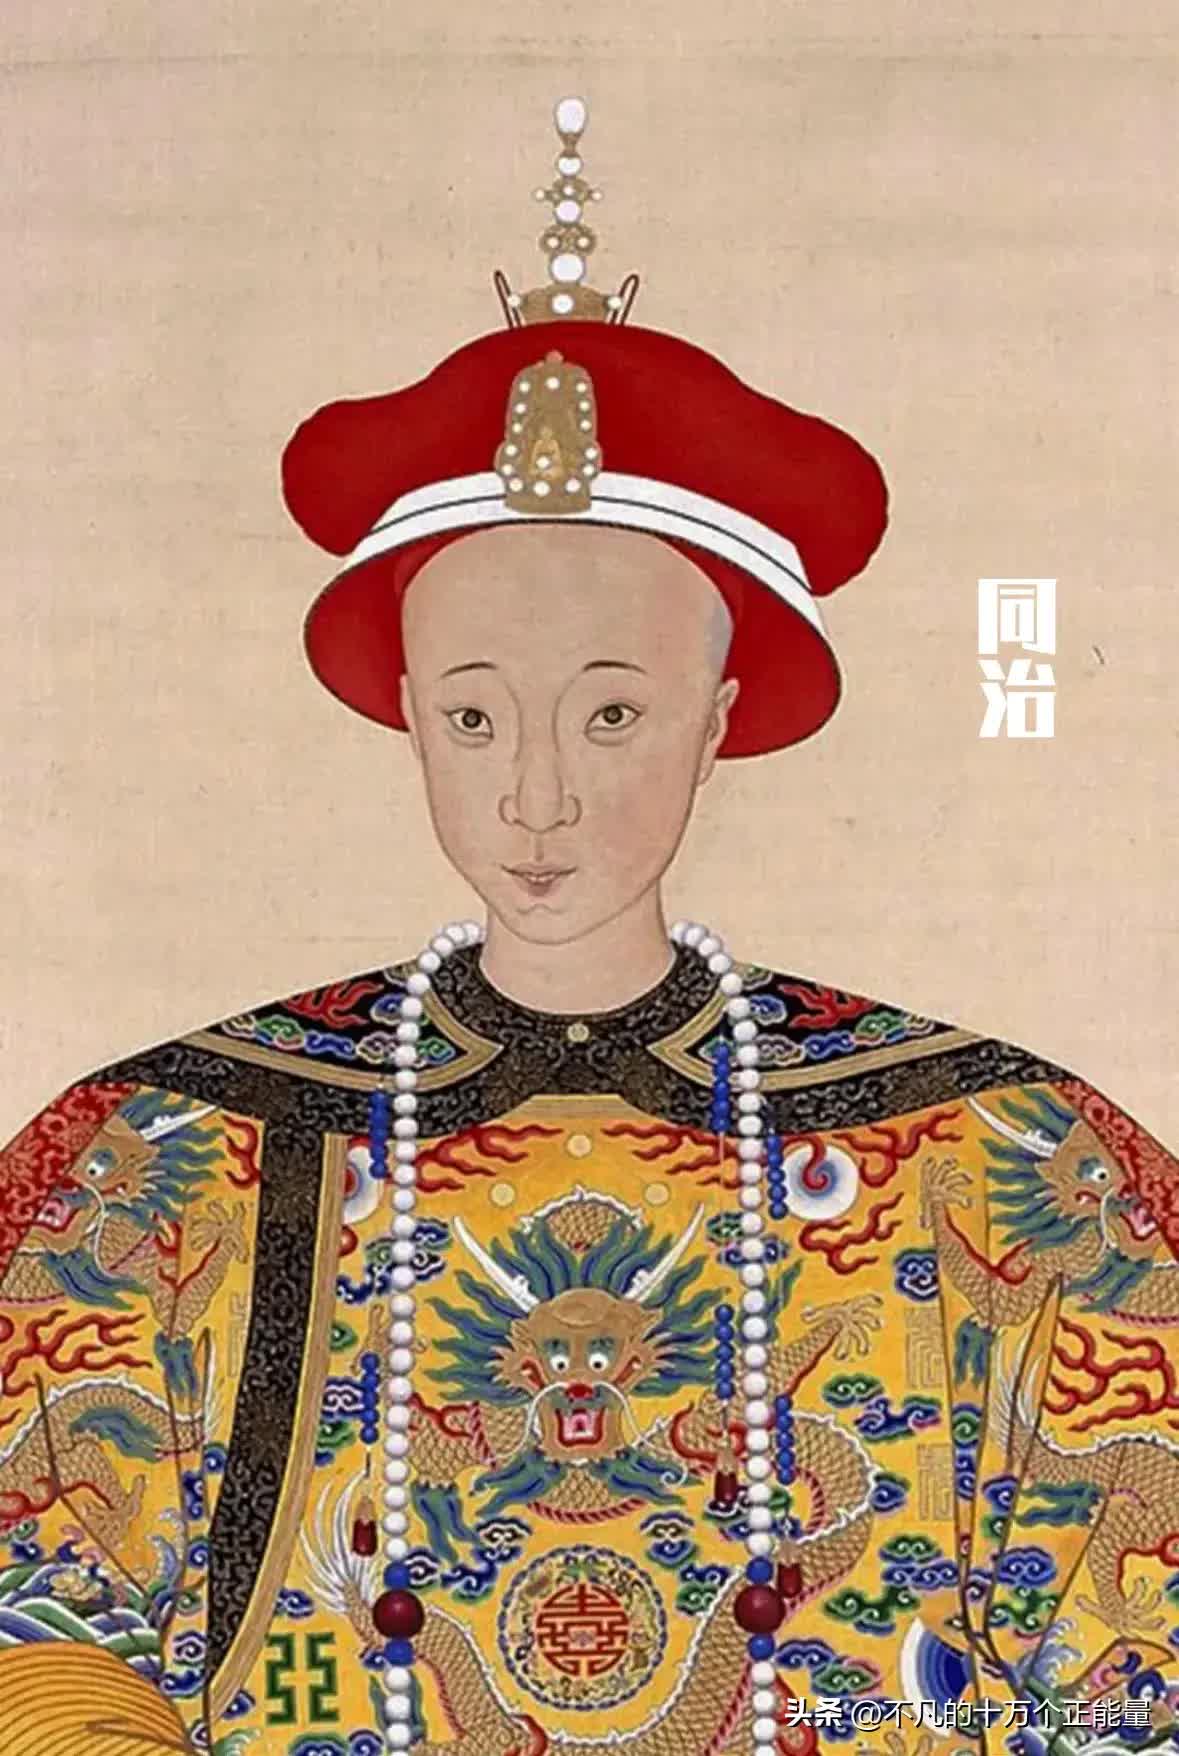 AI thêm màu vào chân dung 12 vị Hoàng đế nhà Thanh: Bất ngờ nhan sắc "đấng lang quân" của Từ Hi Thái hậu- Ảnh 19.